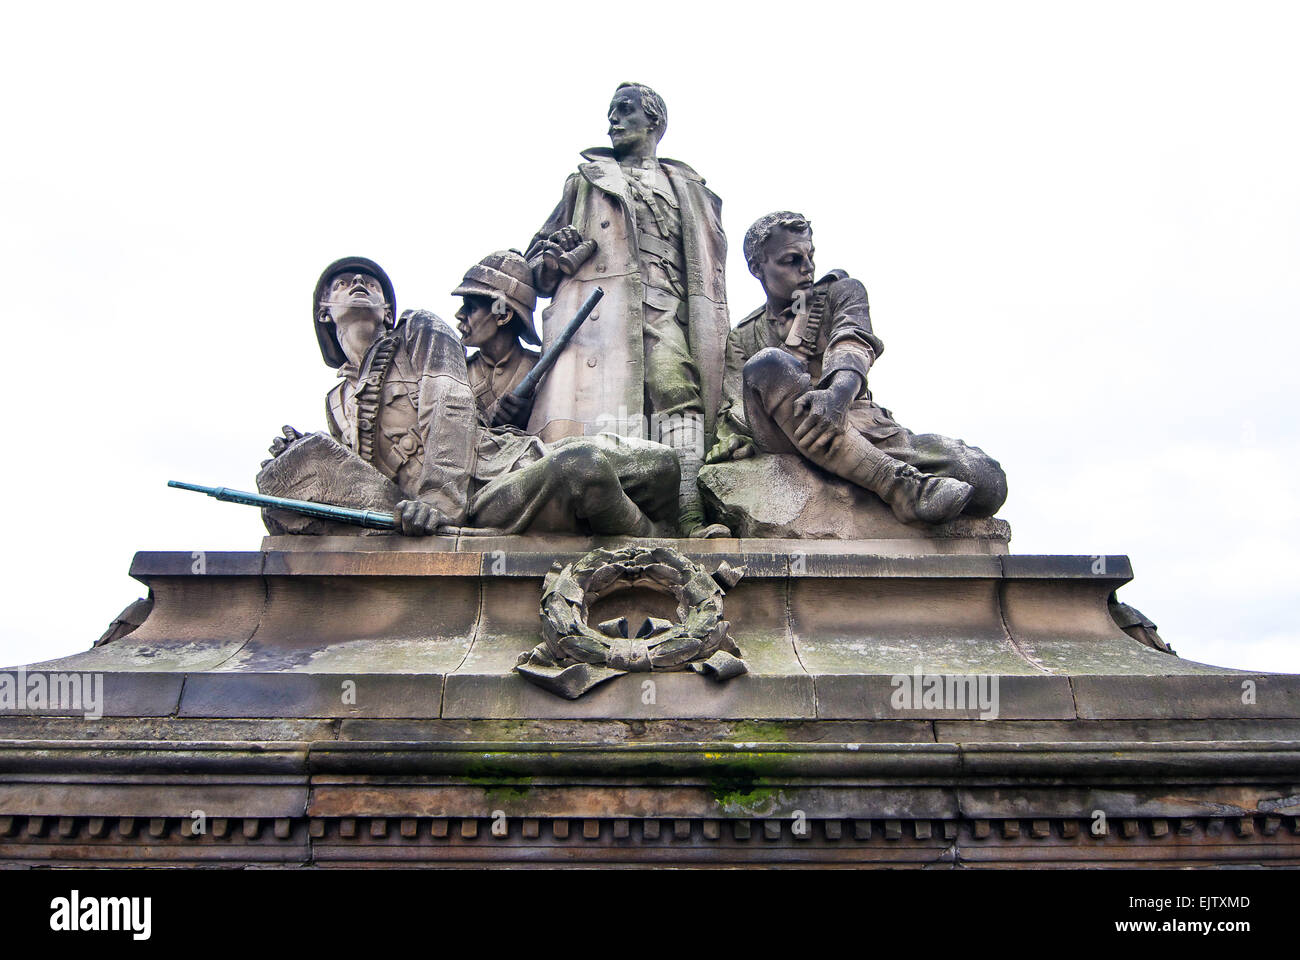 Monument commémoratif de guerre du Canada, le North Bridge à Édimbourg, en Écosse. Sculpté par William Birnie Rhind pour tous ceux qui ont été tués entre 1978-1902. Banque D'Images